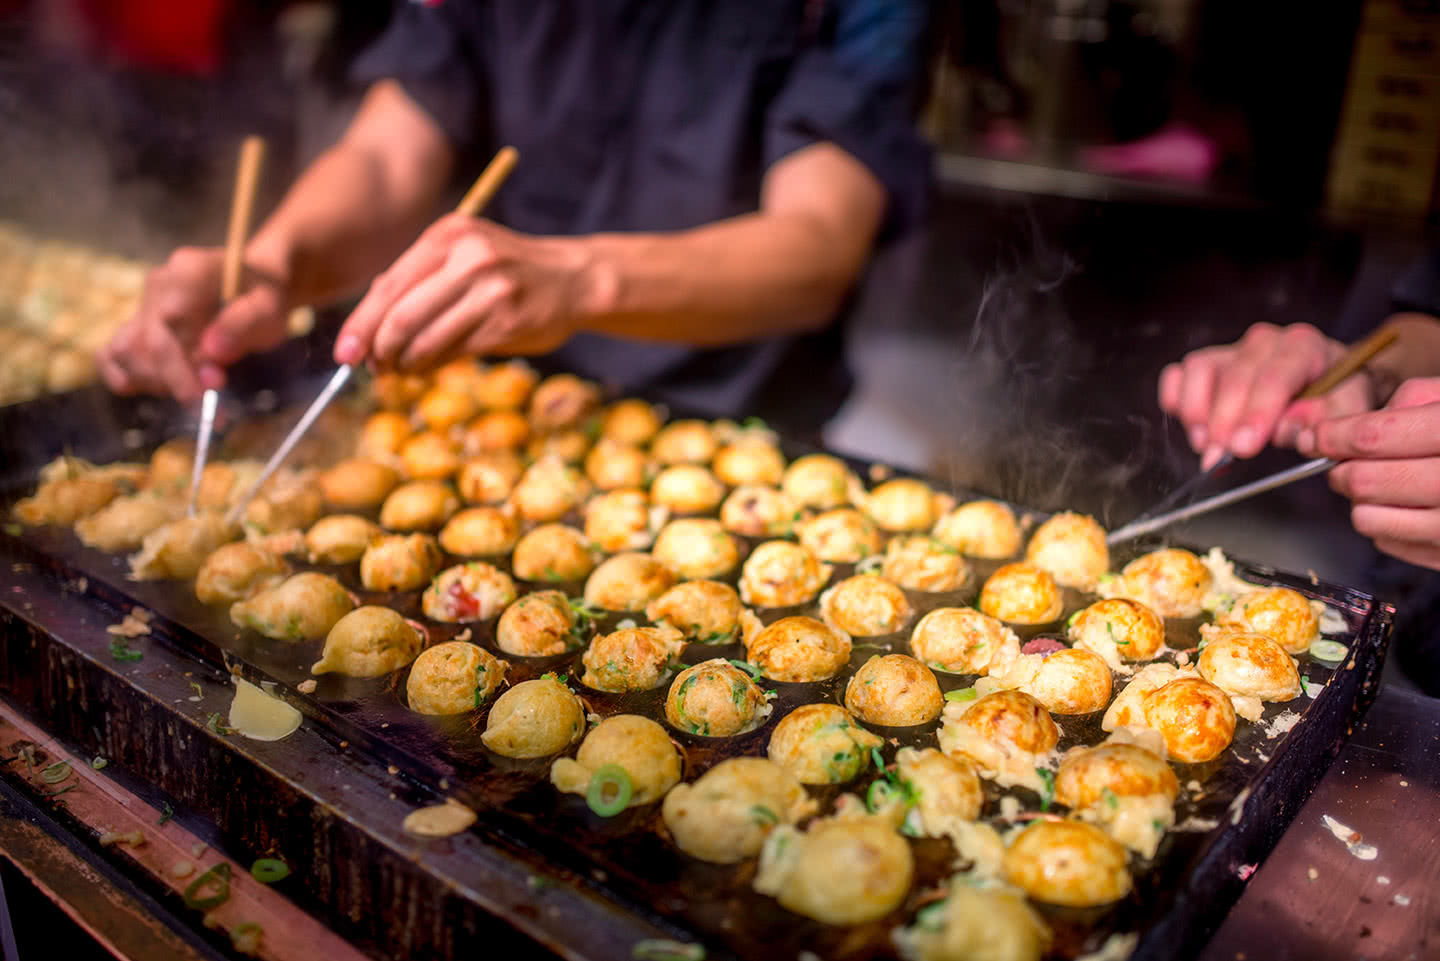 Le Takoyaki Est Un Snack Japonais En Forme De Boule Fait D'une